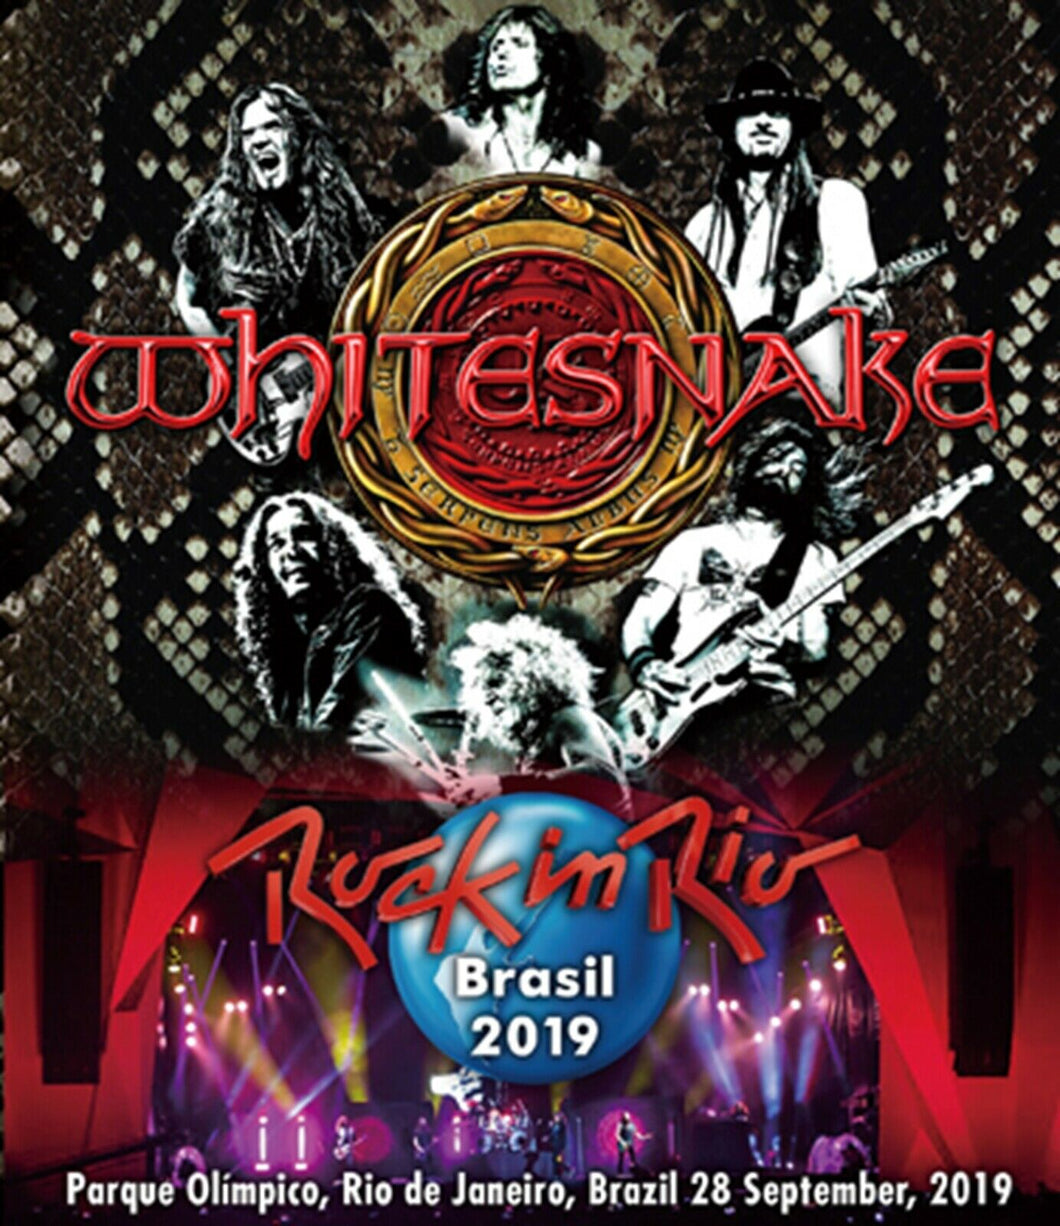 Whitesnake Rock In Rio Brasil 2019 Blu-ray 1 Disc 15 Tracks Music Japan F/S